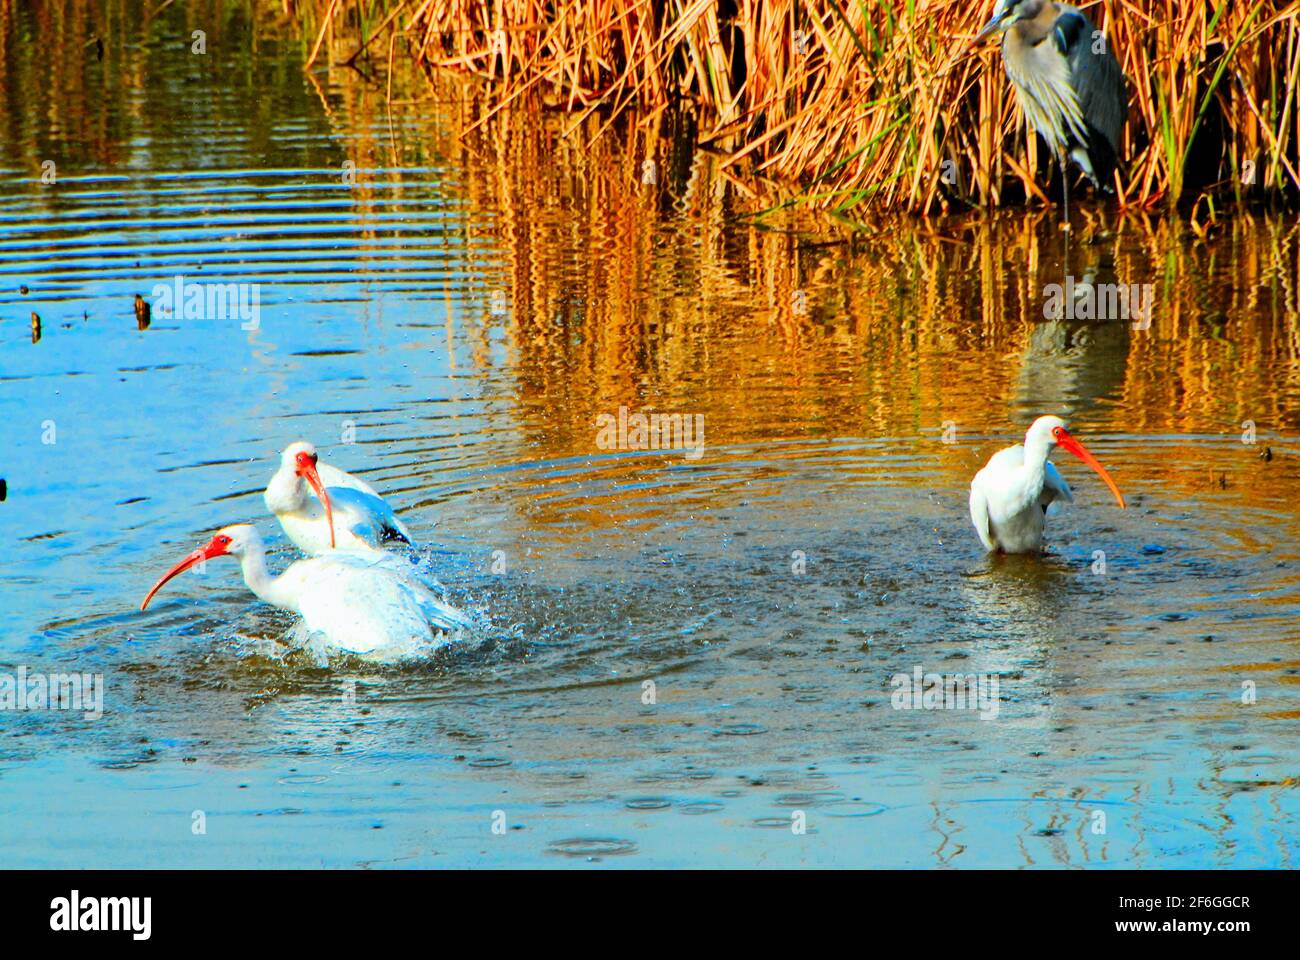 Im World Birding and Nature Center auf South Padre Island, Texas, USA, baden drei weiße Ibis-Vögel im Wasser. Stockfoto